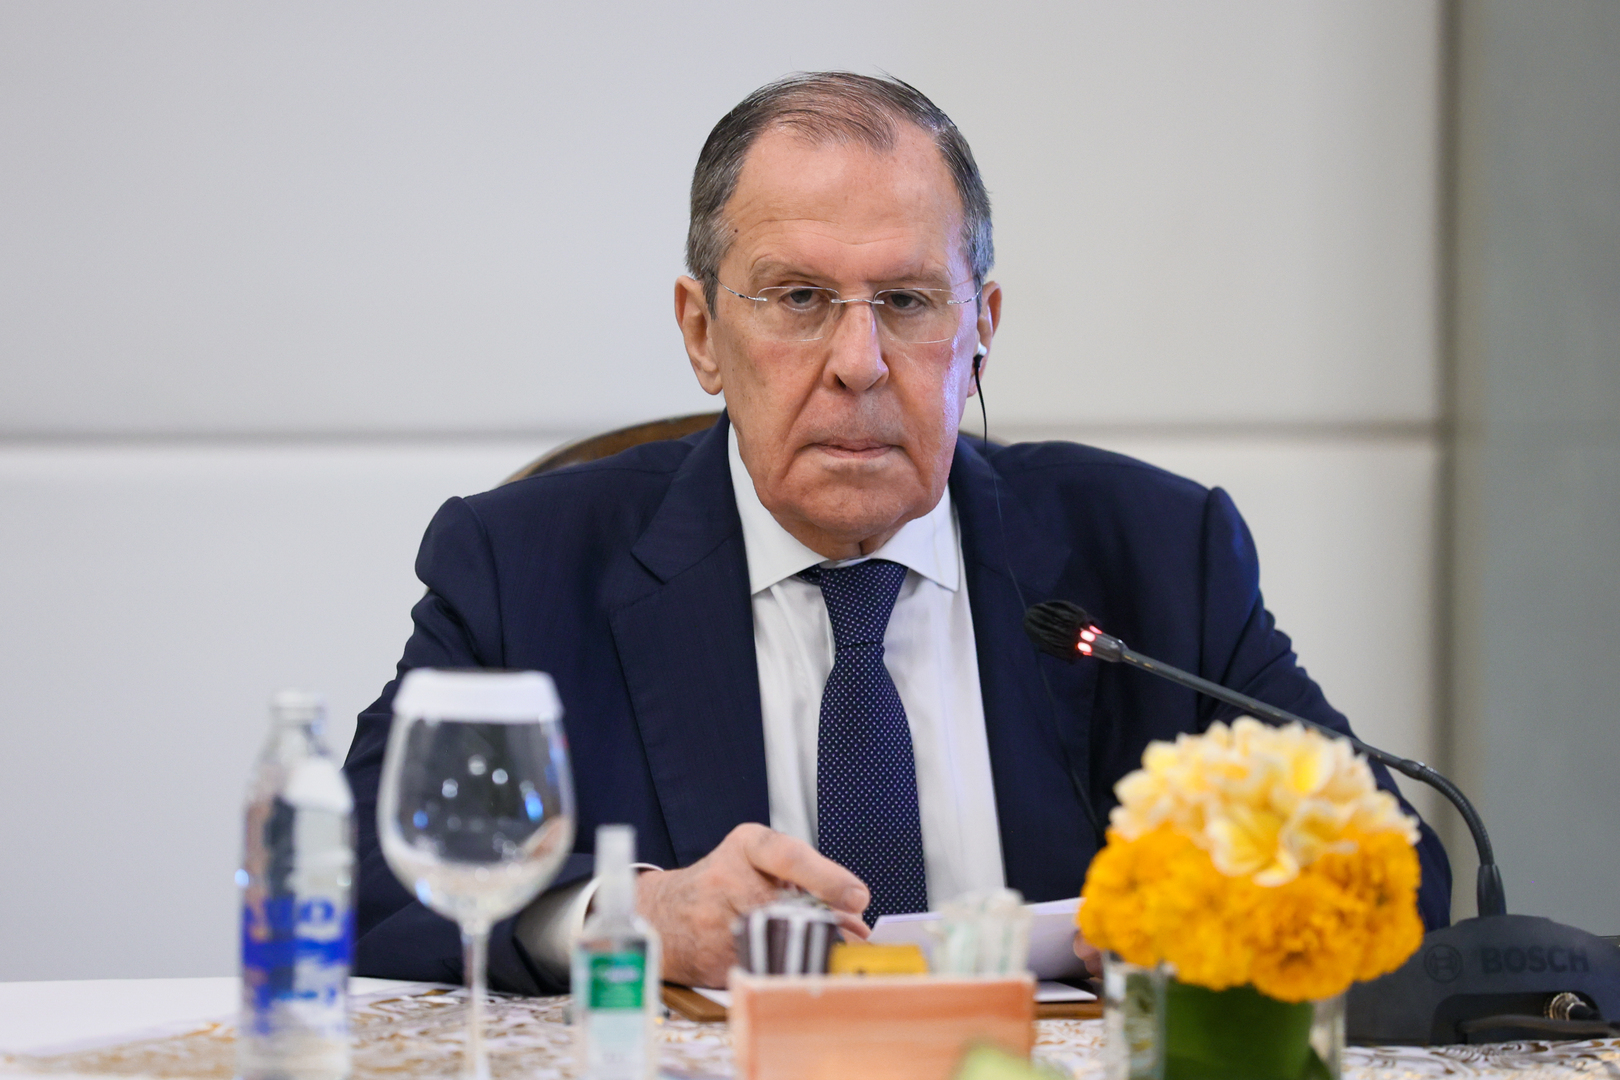 لافروف: روسيا طرحت الأسئلة التي تحرج الغرب ولم تتلق جوابا